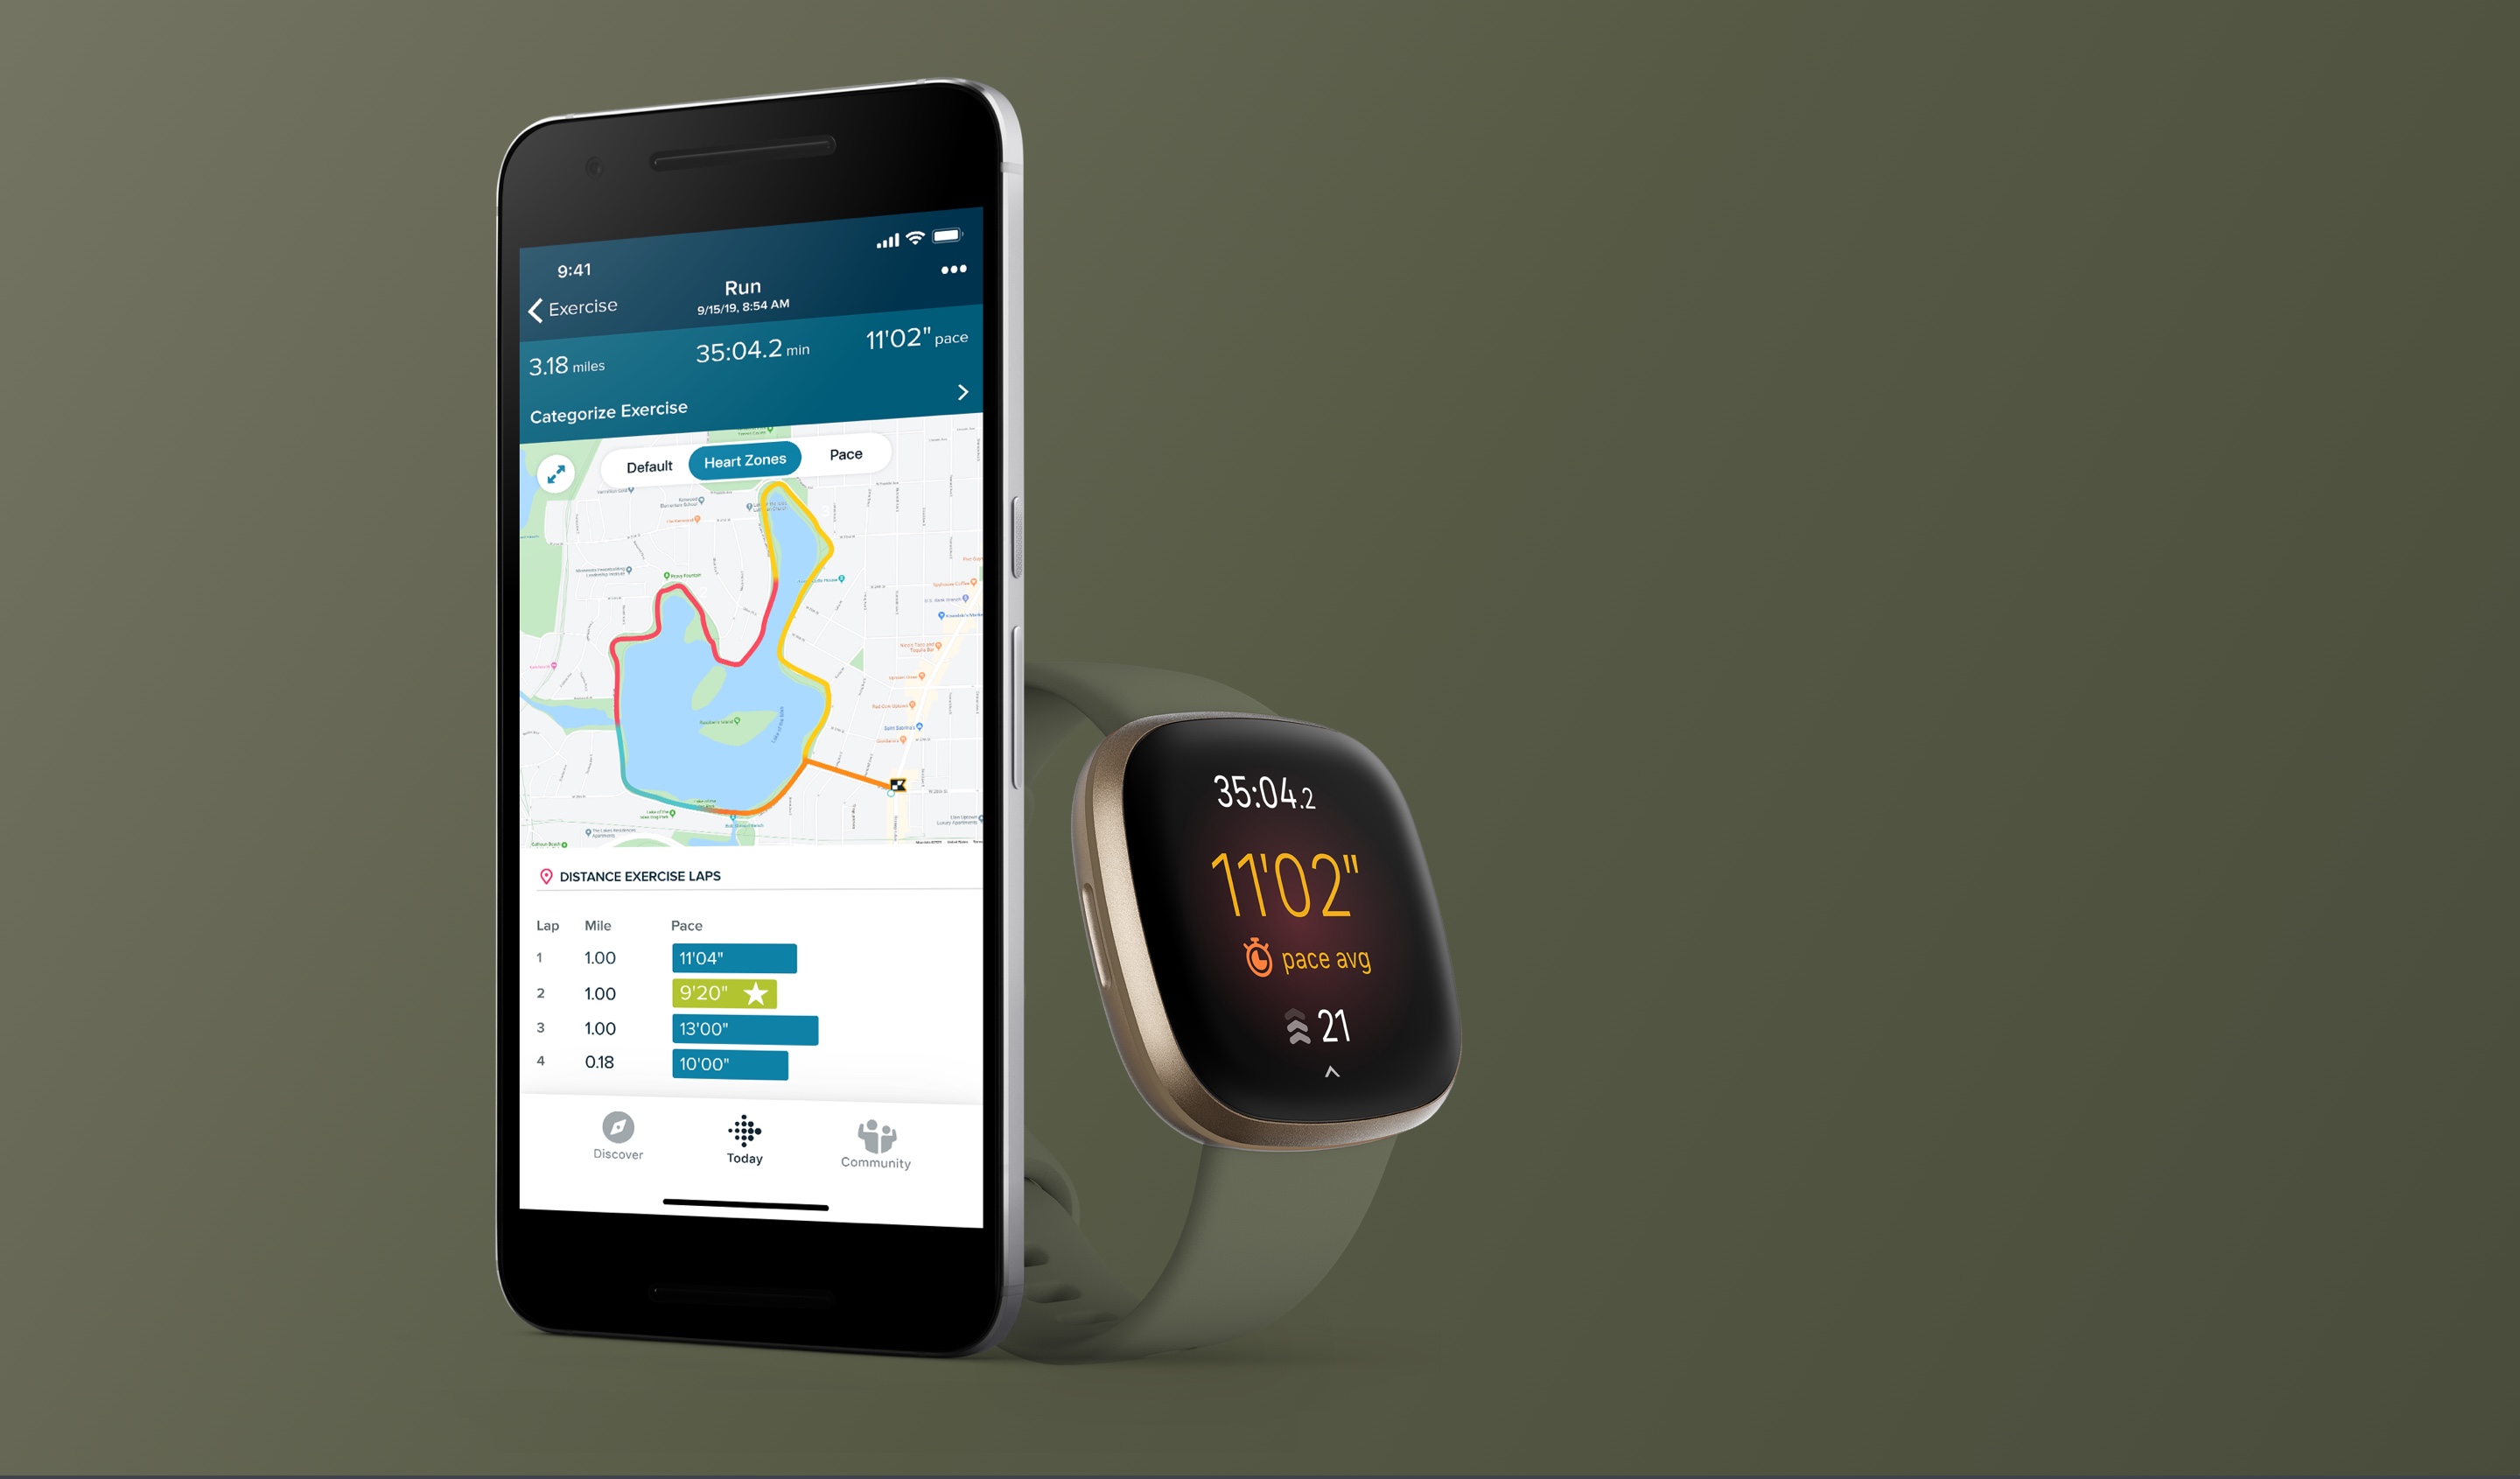 FITBIT VERSA 3 : Test complet de la dernière montre connectée Versa ⌚⚡⌚  Meilleure smartwatch 2020 ? 